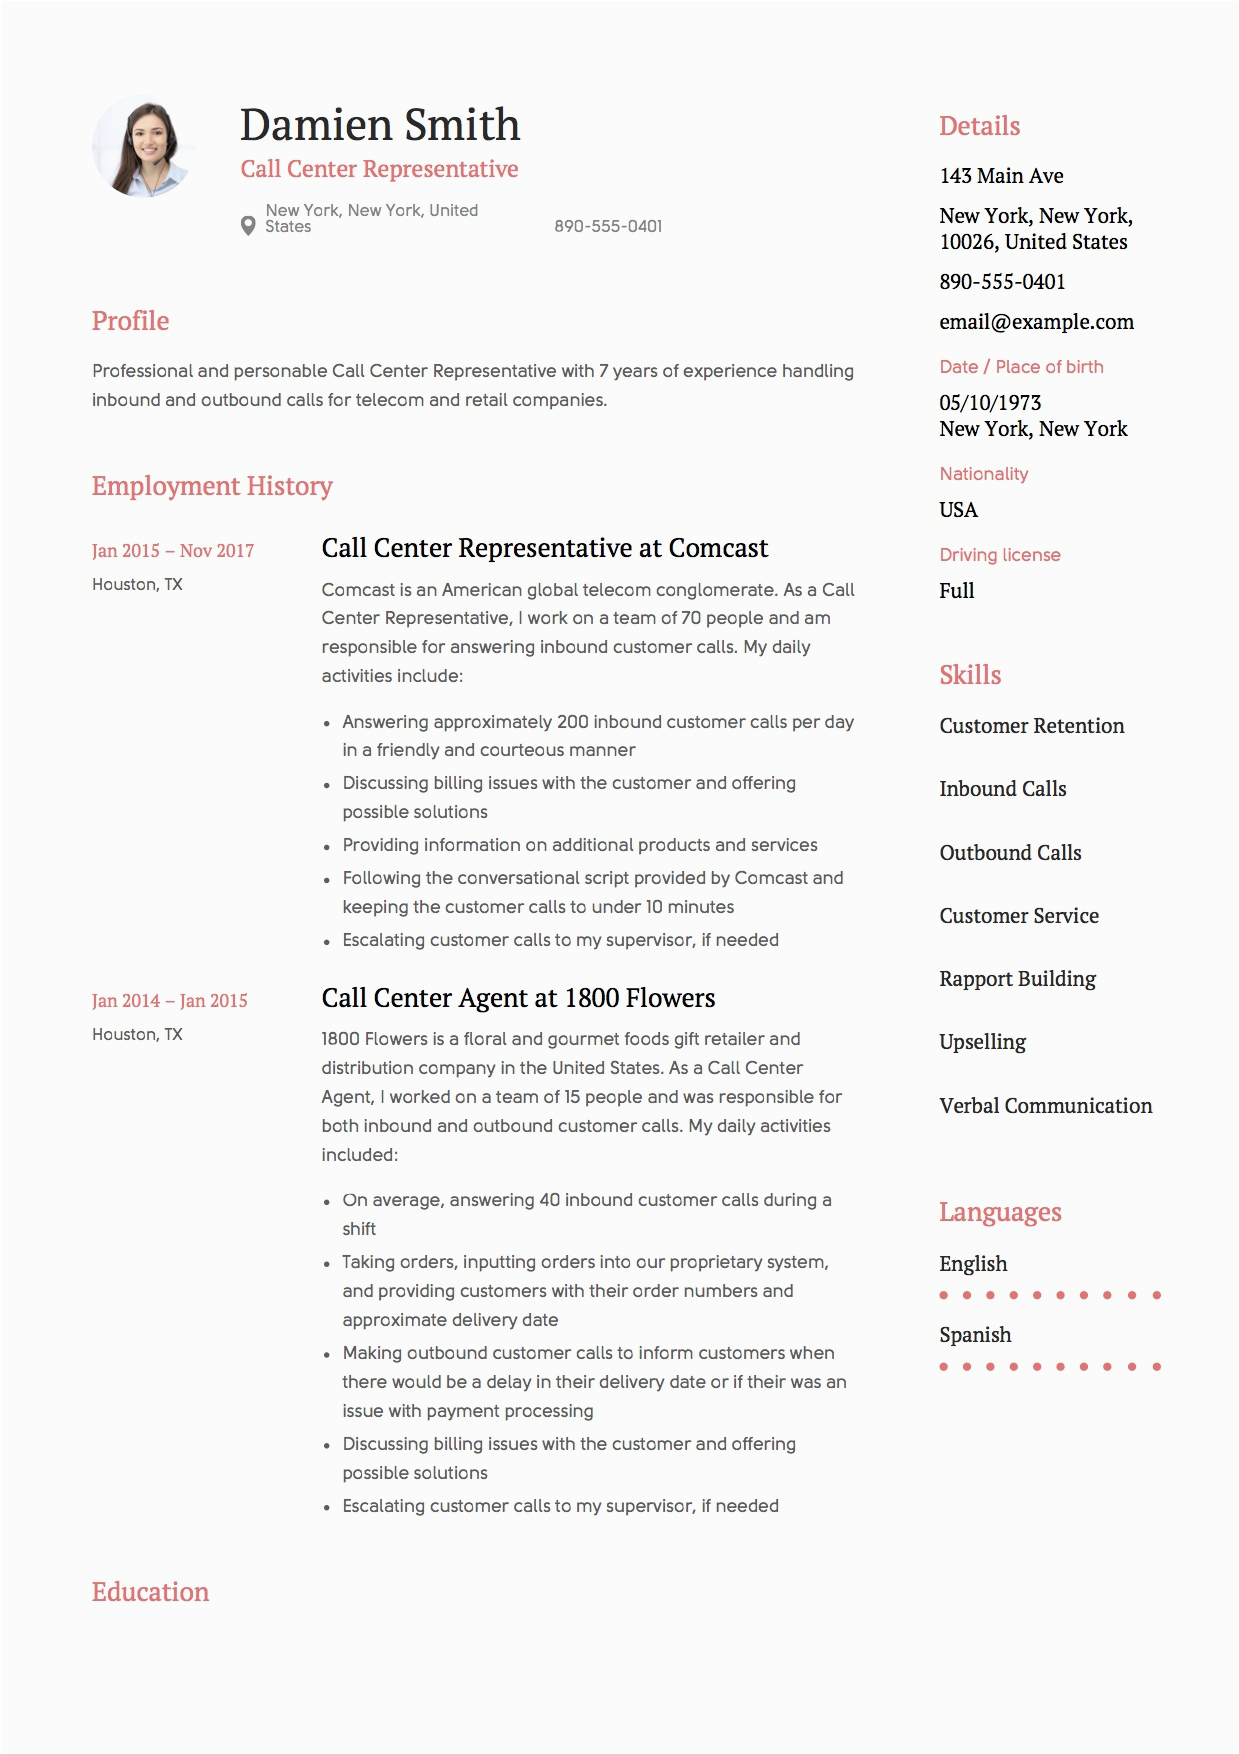 Resume Samples for Call Center Representative Call Center Representative Resume & Guide